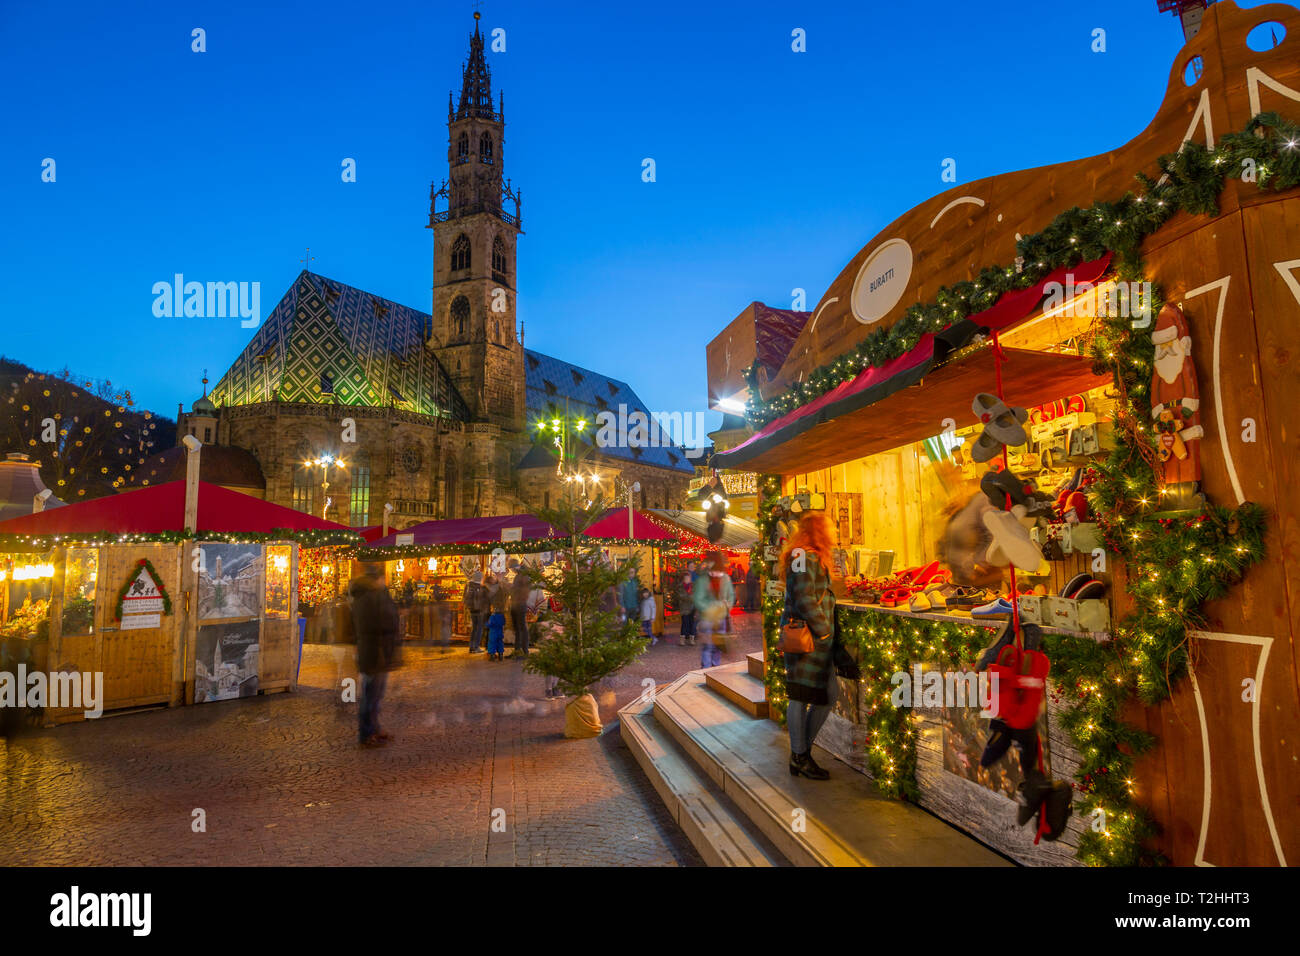 La Cathédrale de Bolzano et longue exposition de clients au marché de Noël de la Piazza Walther, Bolzano, Italie, Europe Banque D'Images